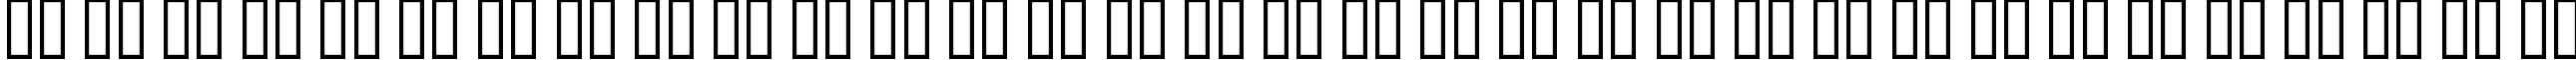 Пример написания русского алфавита шрифтом A Charming Font